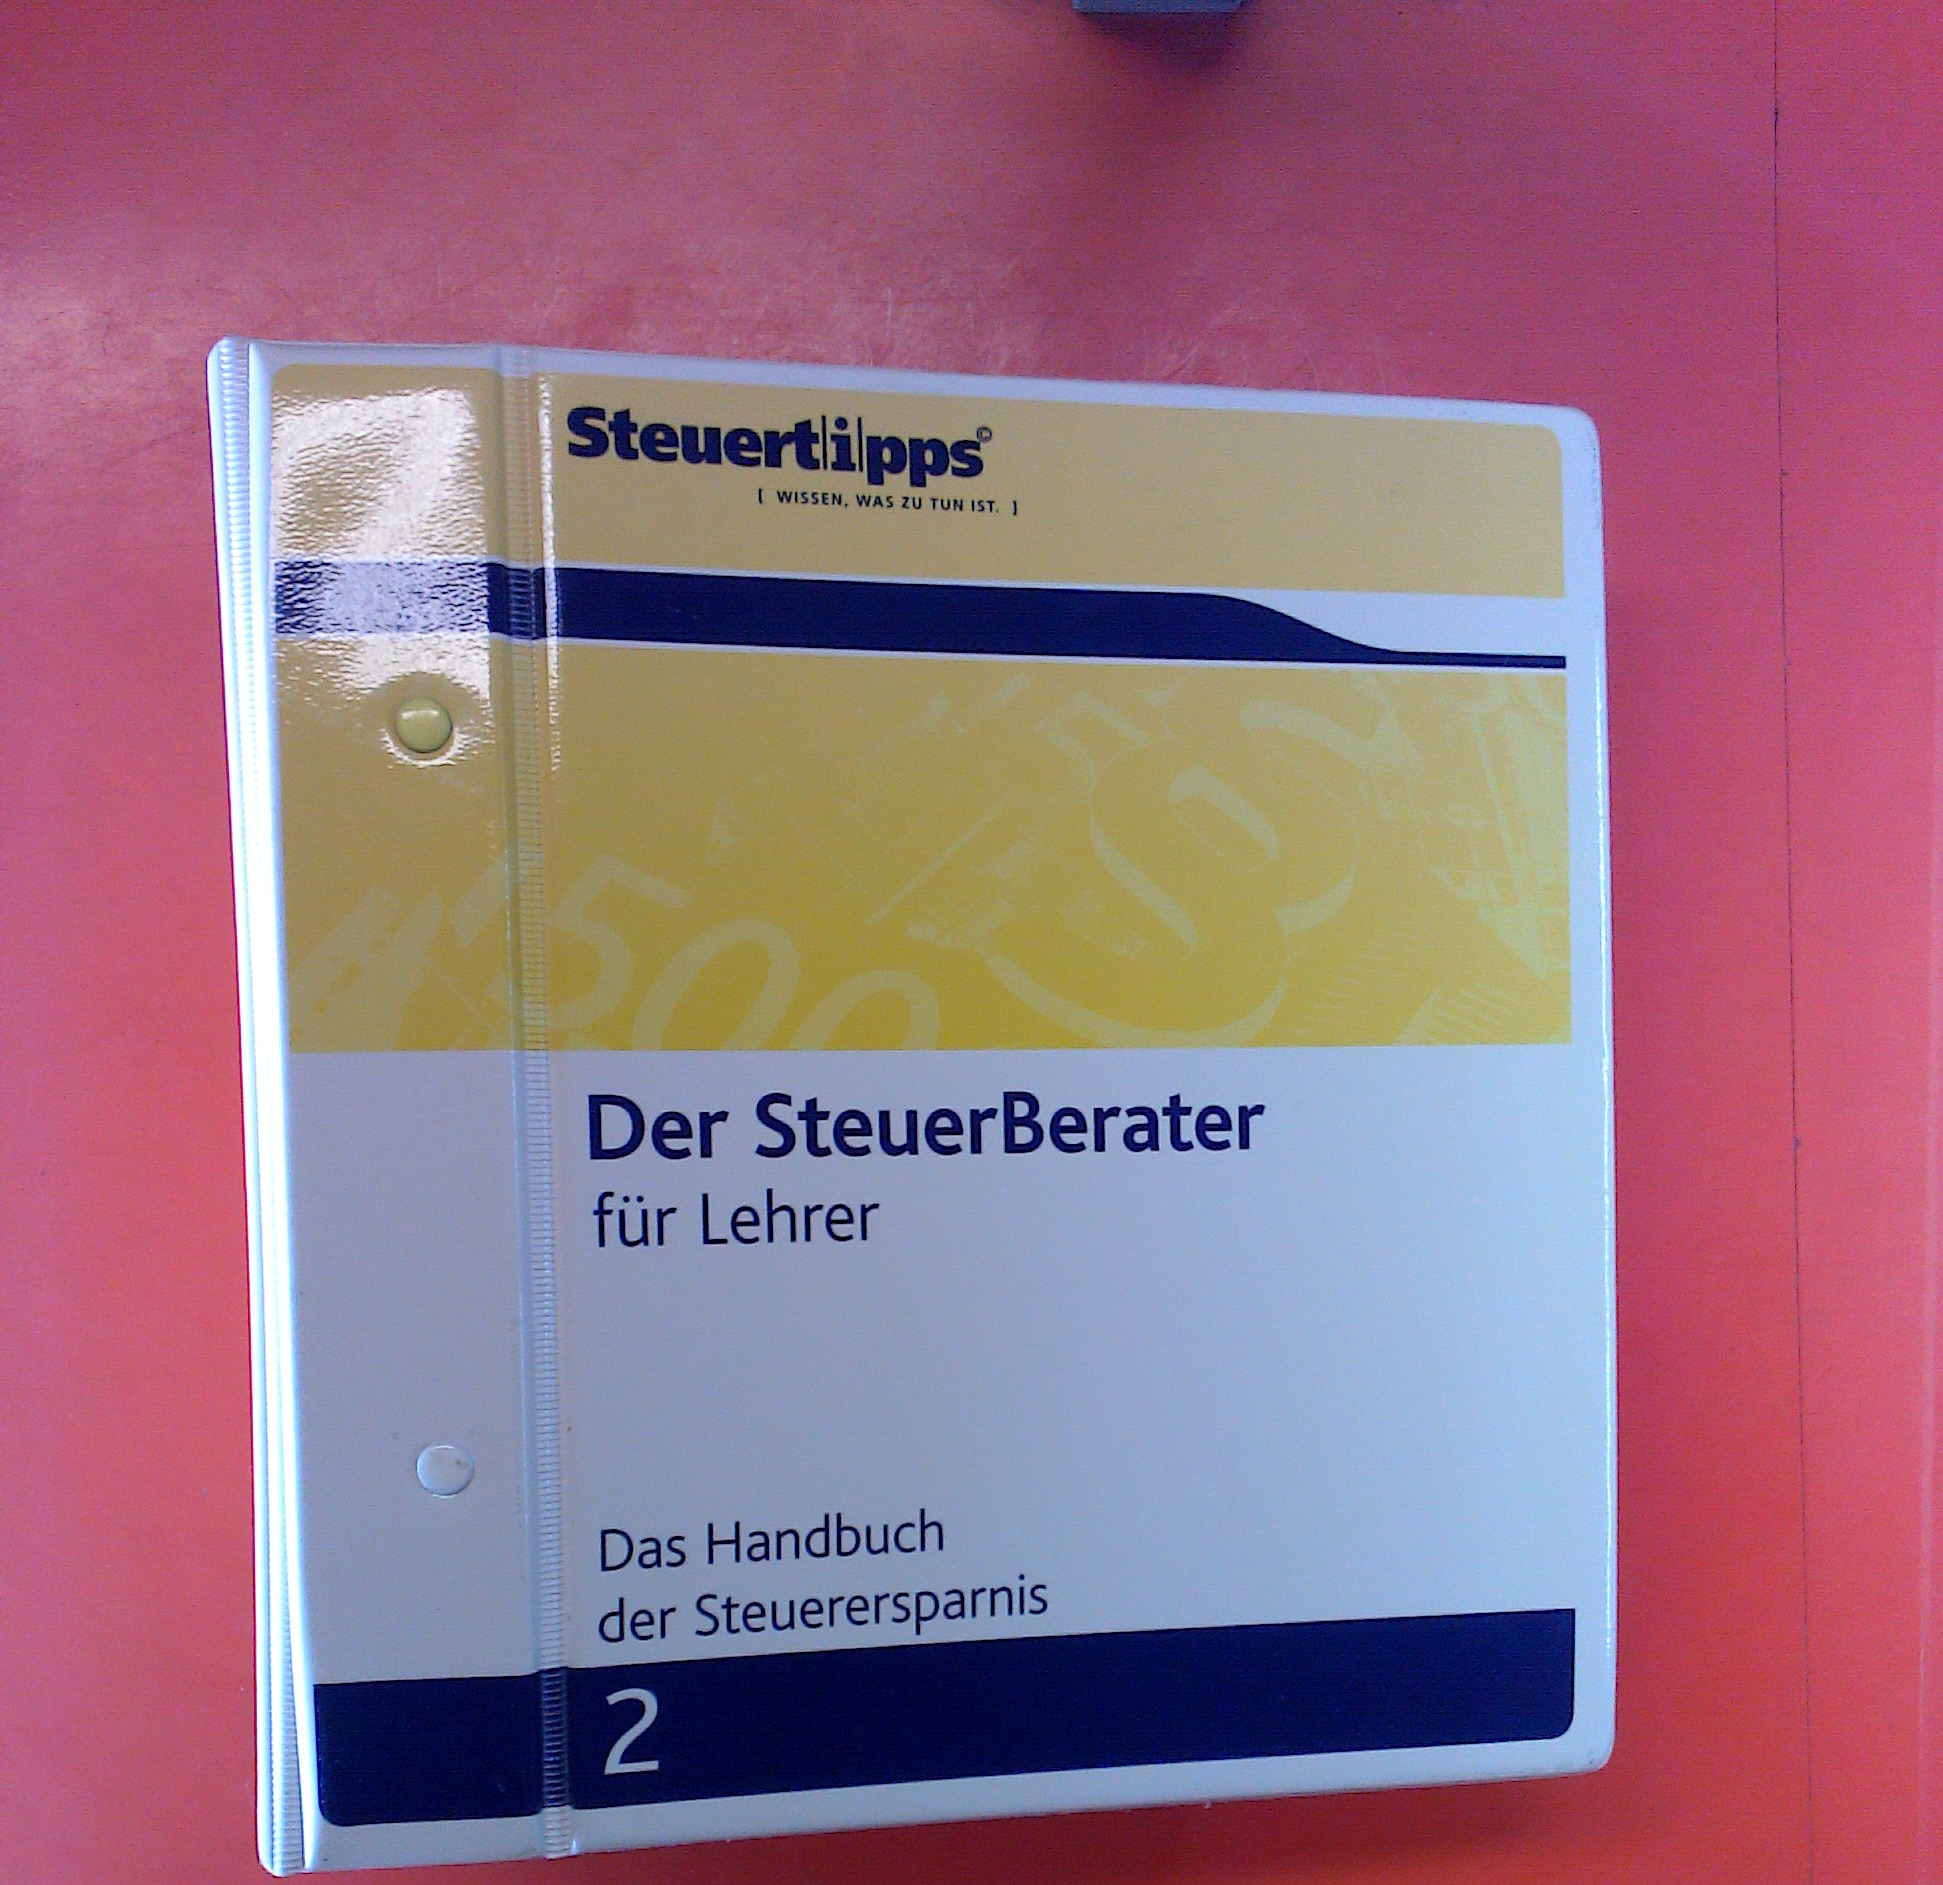 Steuertipps - Der SteuerBerater für Lehrer 2 (Handbuch der Steuerersparnis) - Bernd Christian Grimm / Dieter Weber